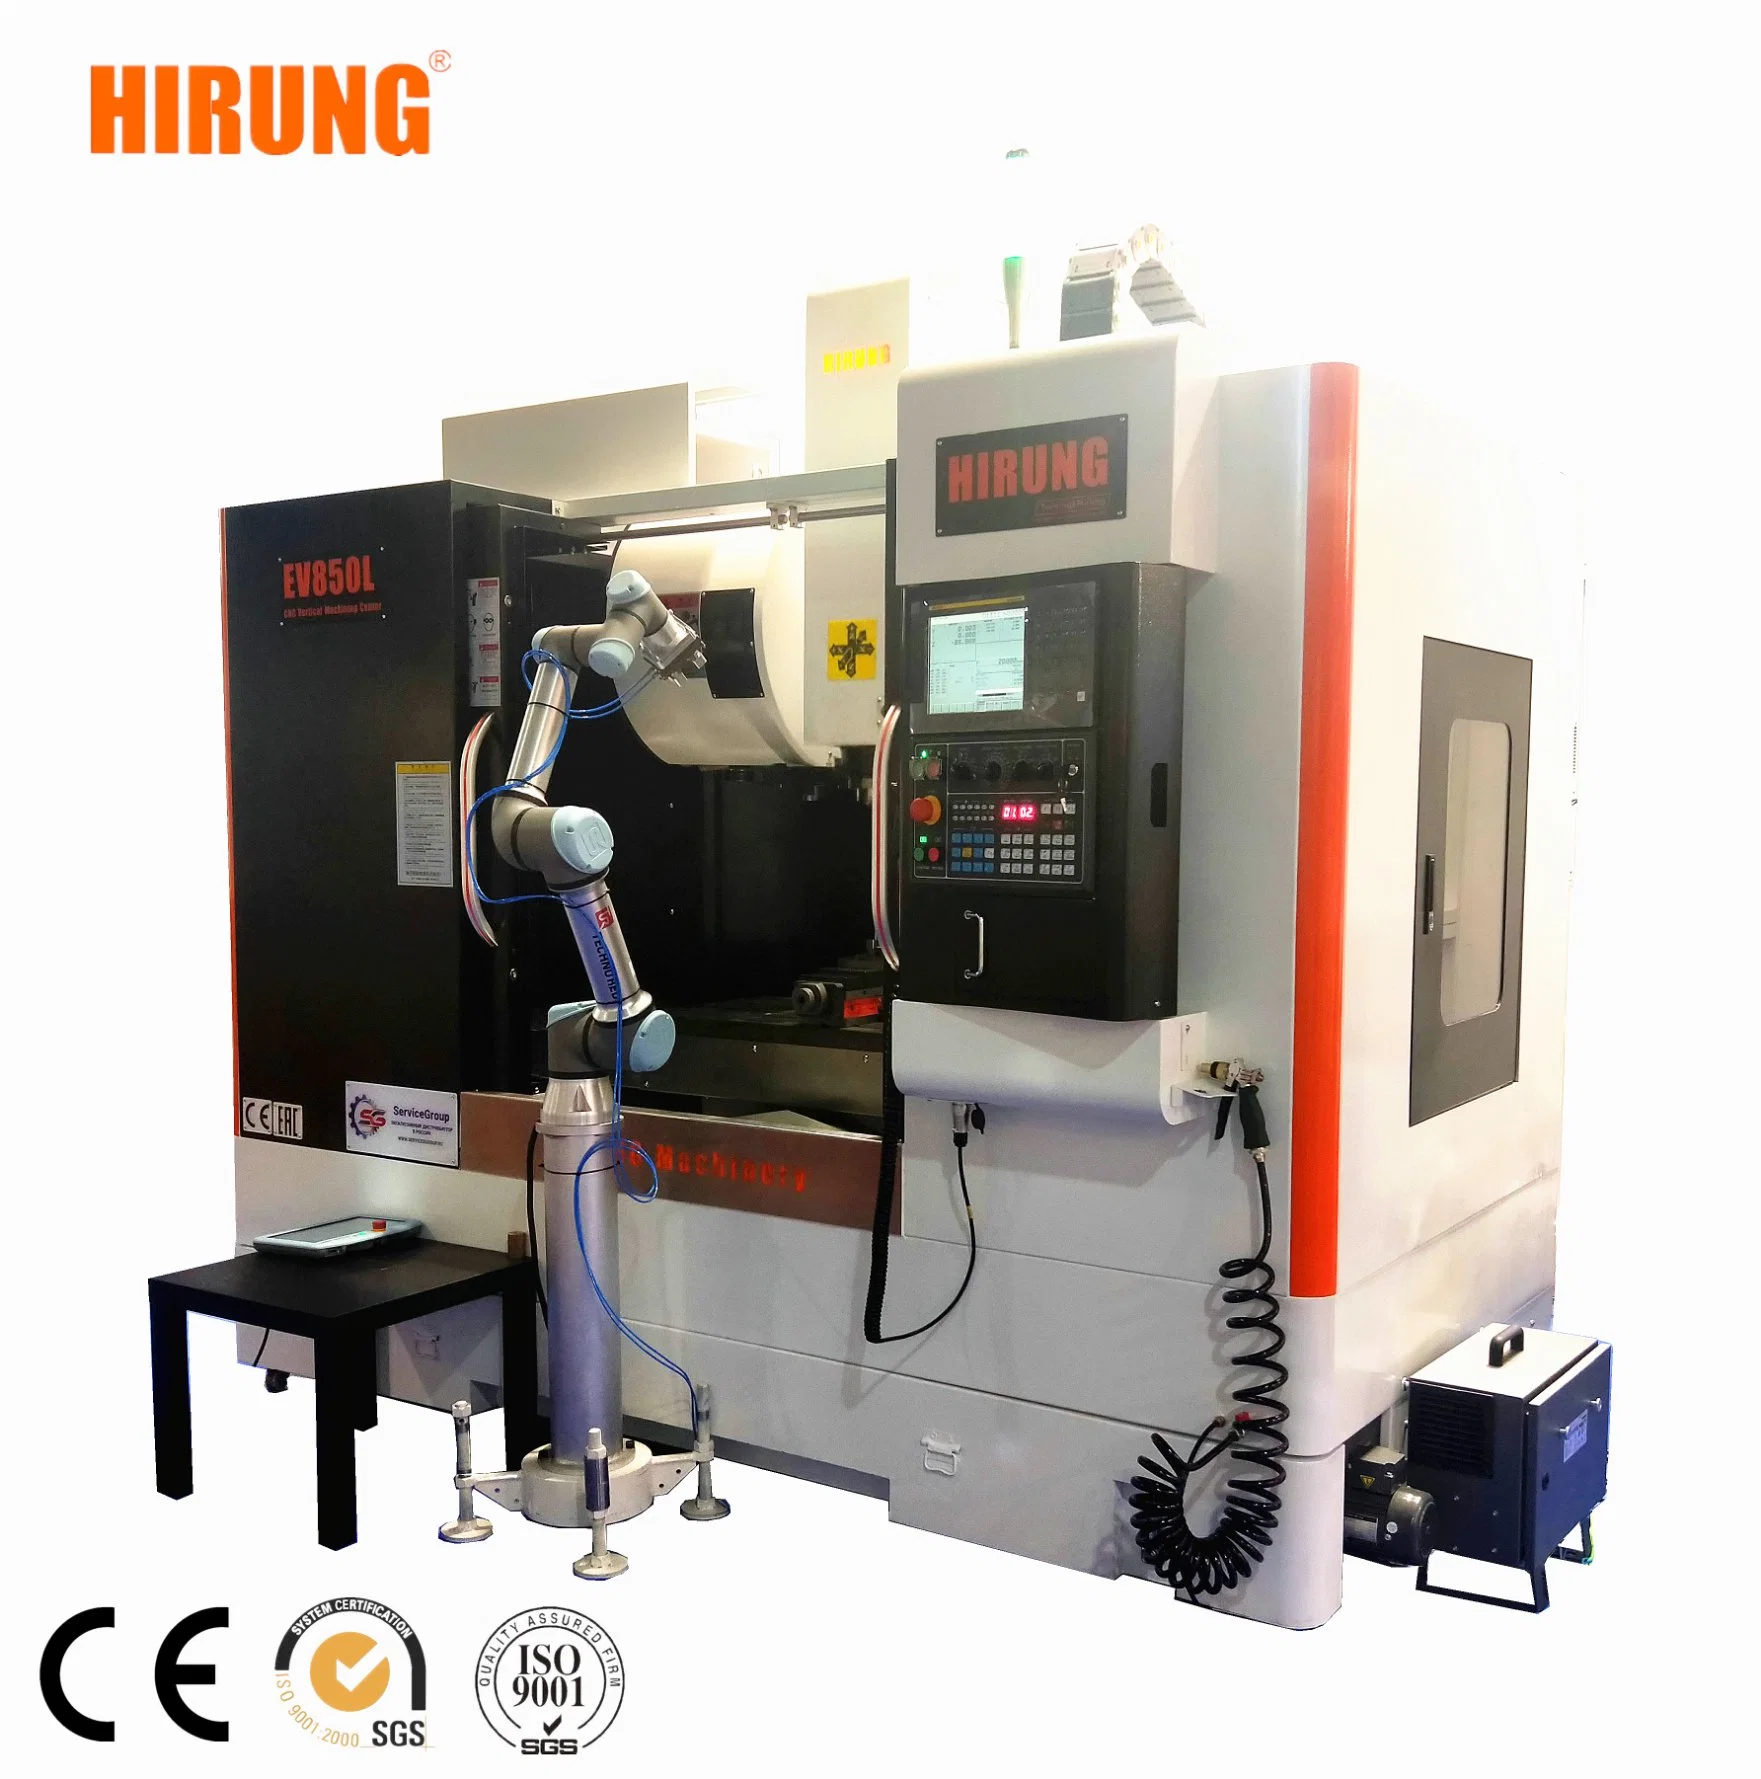 الصين تخفيضات ساخنة ماكينة التفريز الرأسي CNC، مركز الميكينج CNC (EV850L)